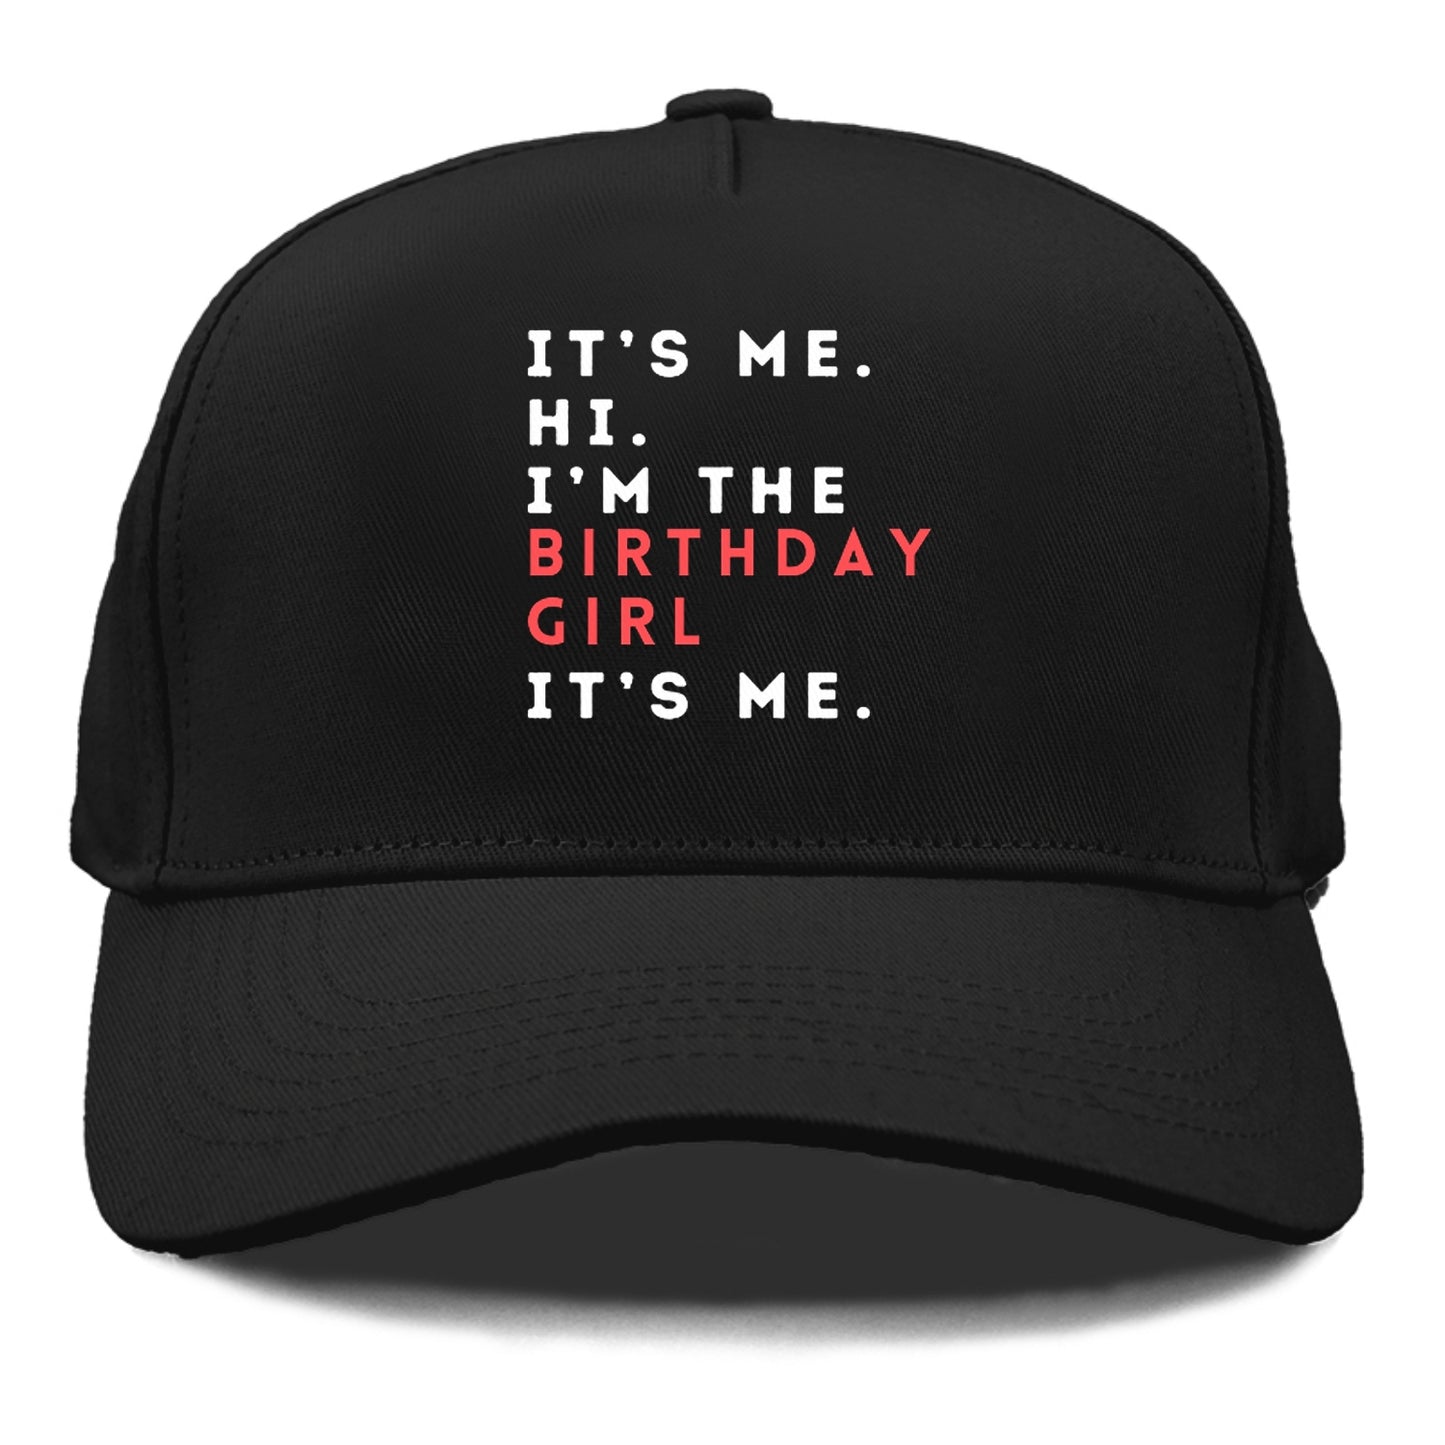 i'm the birthday girl Hat